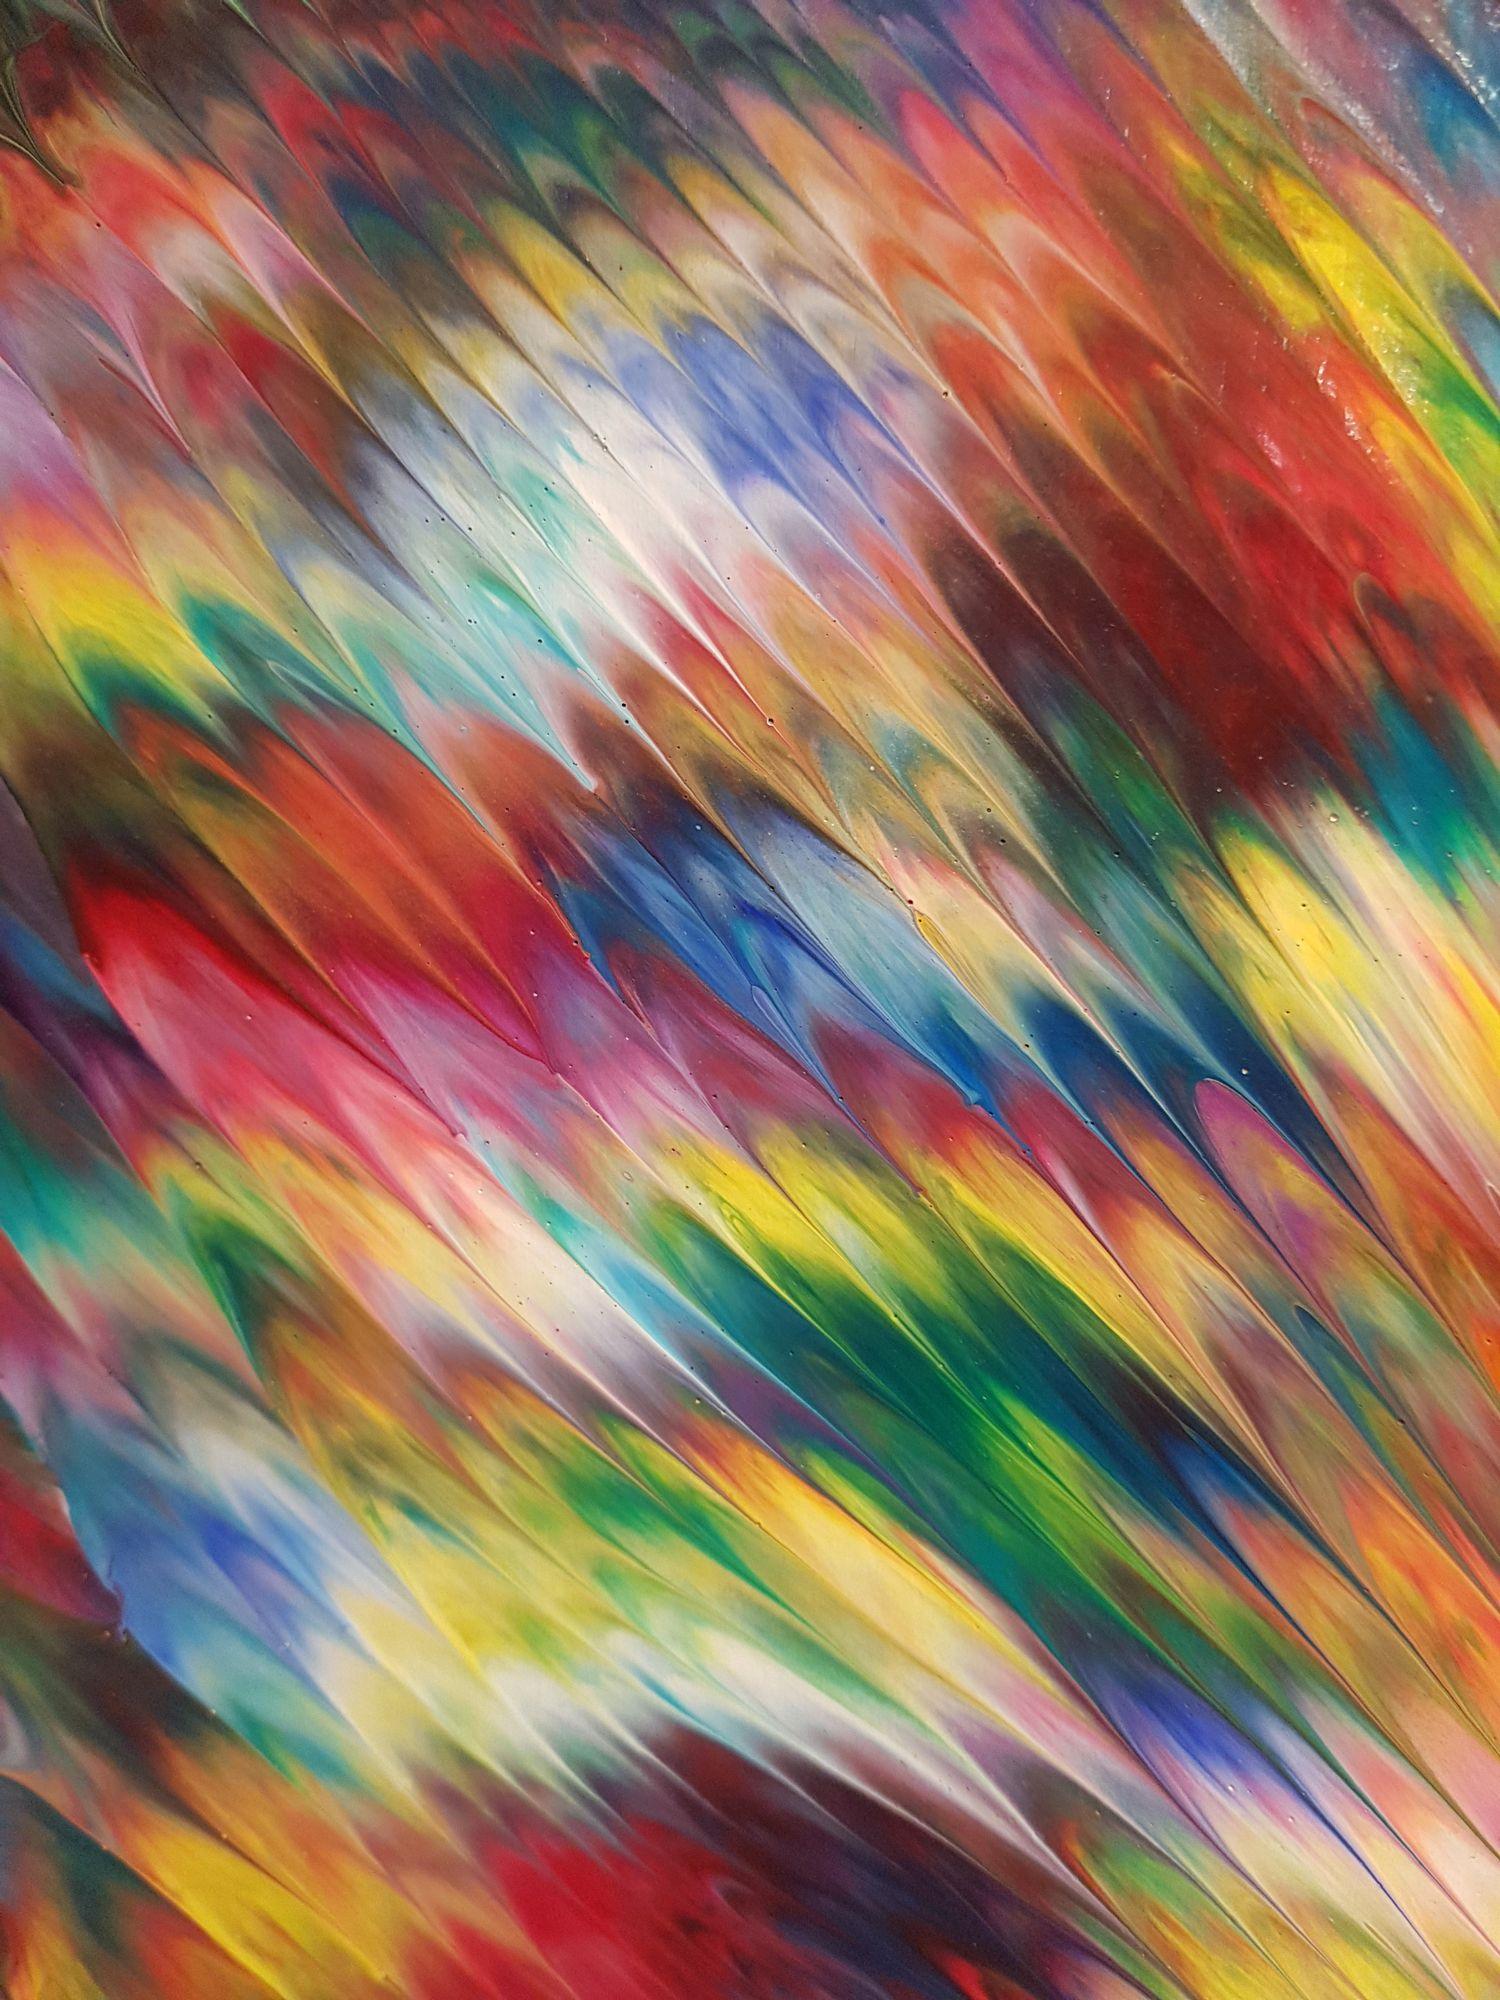 Une peinture d'expressionnisme abstrait avec des textures uniques, un mouvement féroce et des couleurs vibrantes, peinte sur une toile faite sur mesure avec des côtés épais de 3 pouces peints dans le même style que le devant pour un regard percutant